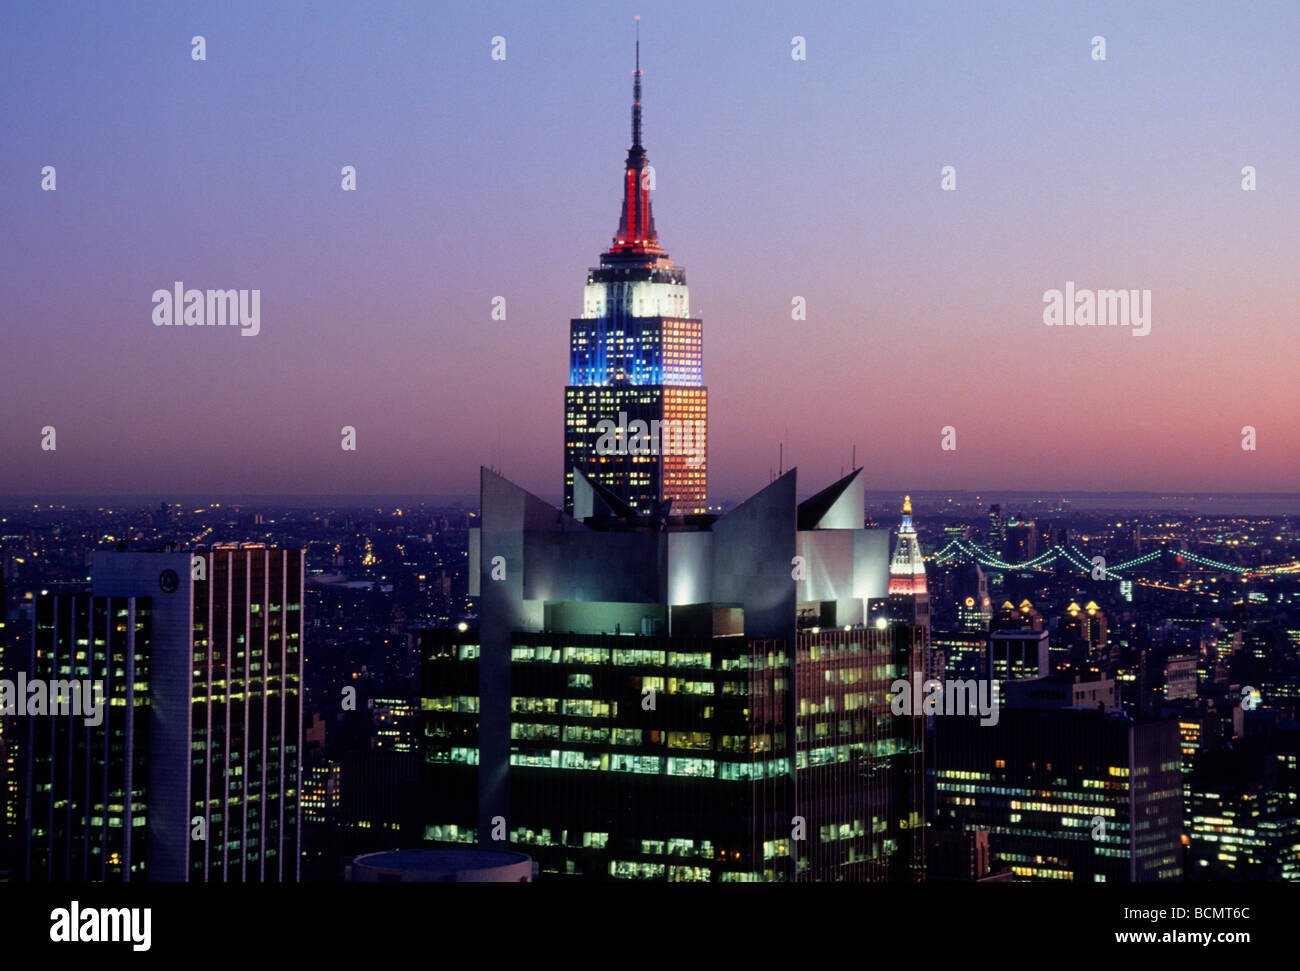 New York. Luftaufnahme des Empire State Building und New York City bei Sonnenuntergang. Rote, weiße und blaue Lichter an diesem historischen Art déco-Gebäude Stockfoto